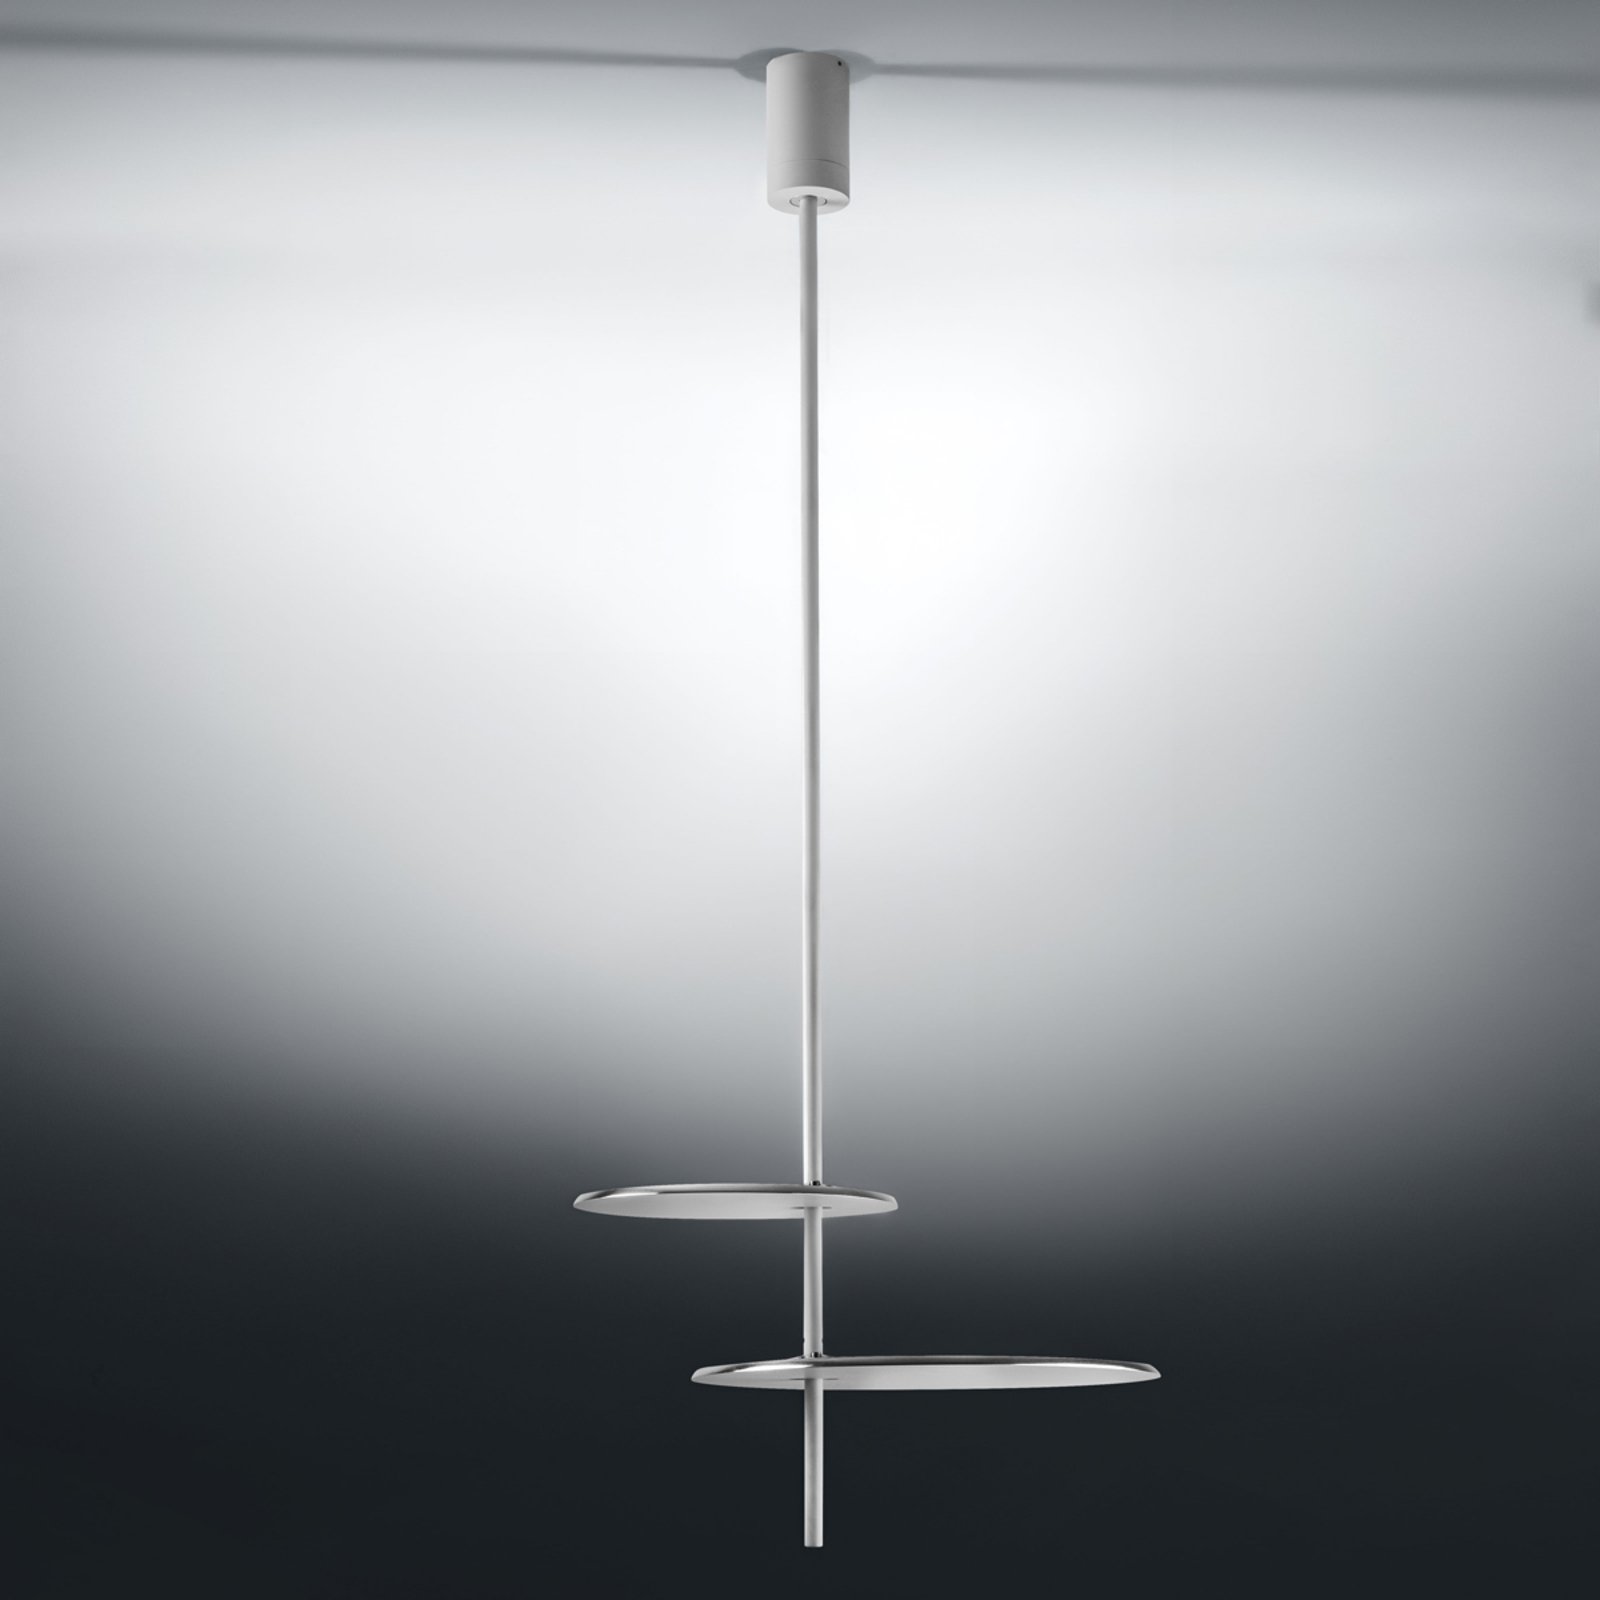 ICONE Lua - LED designer ceiling lamp in white